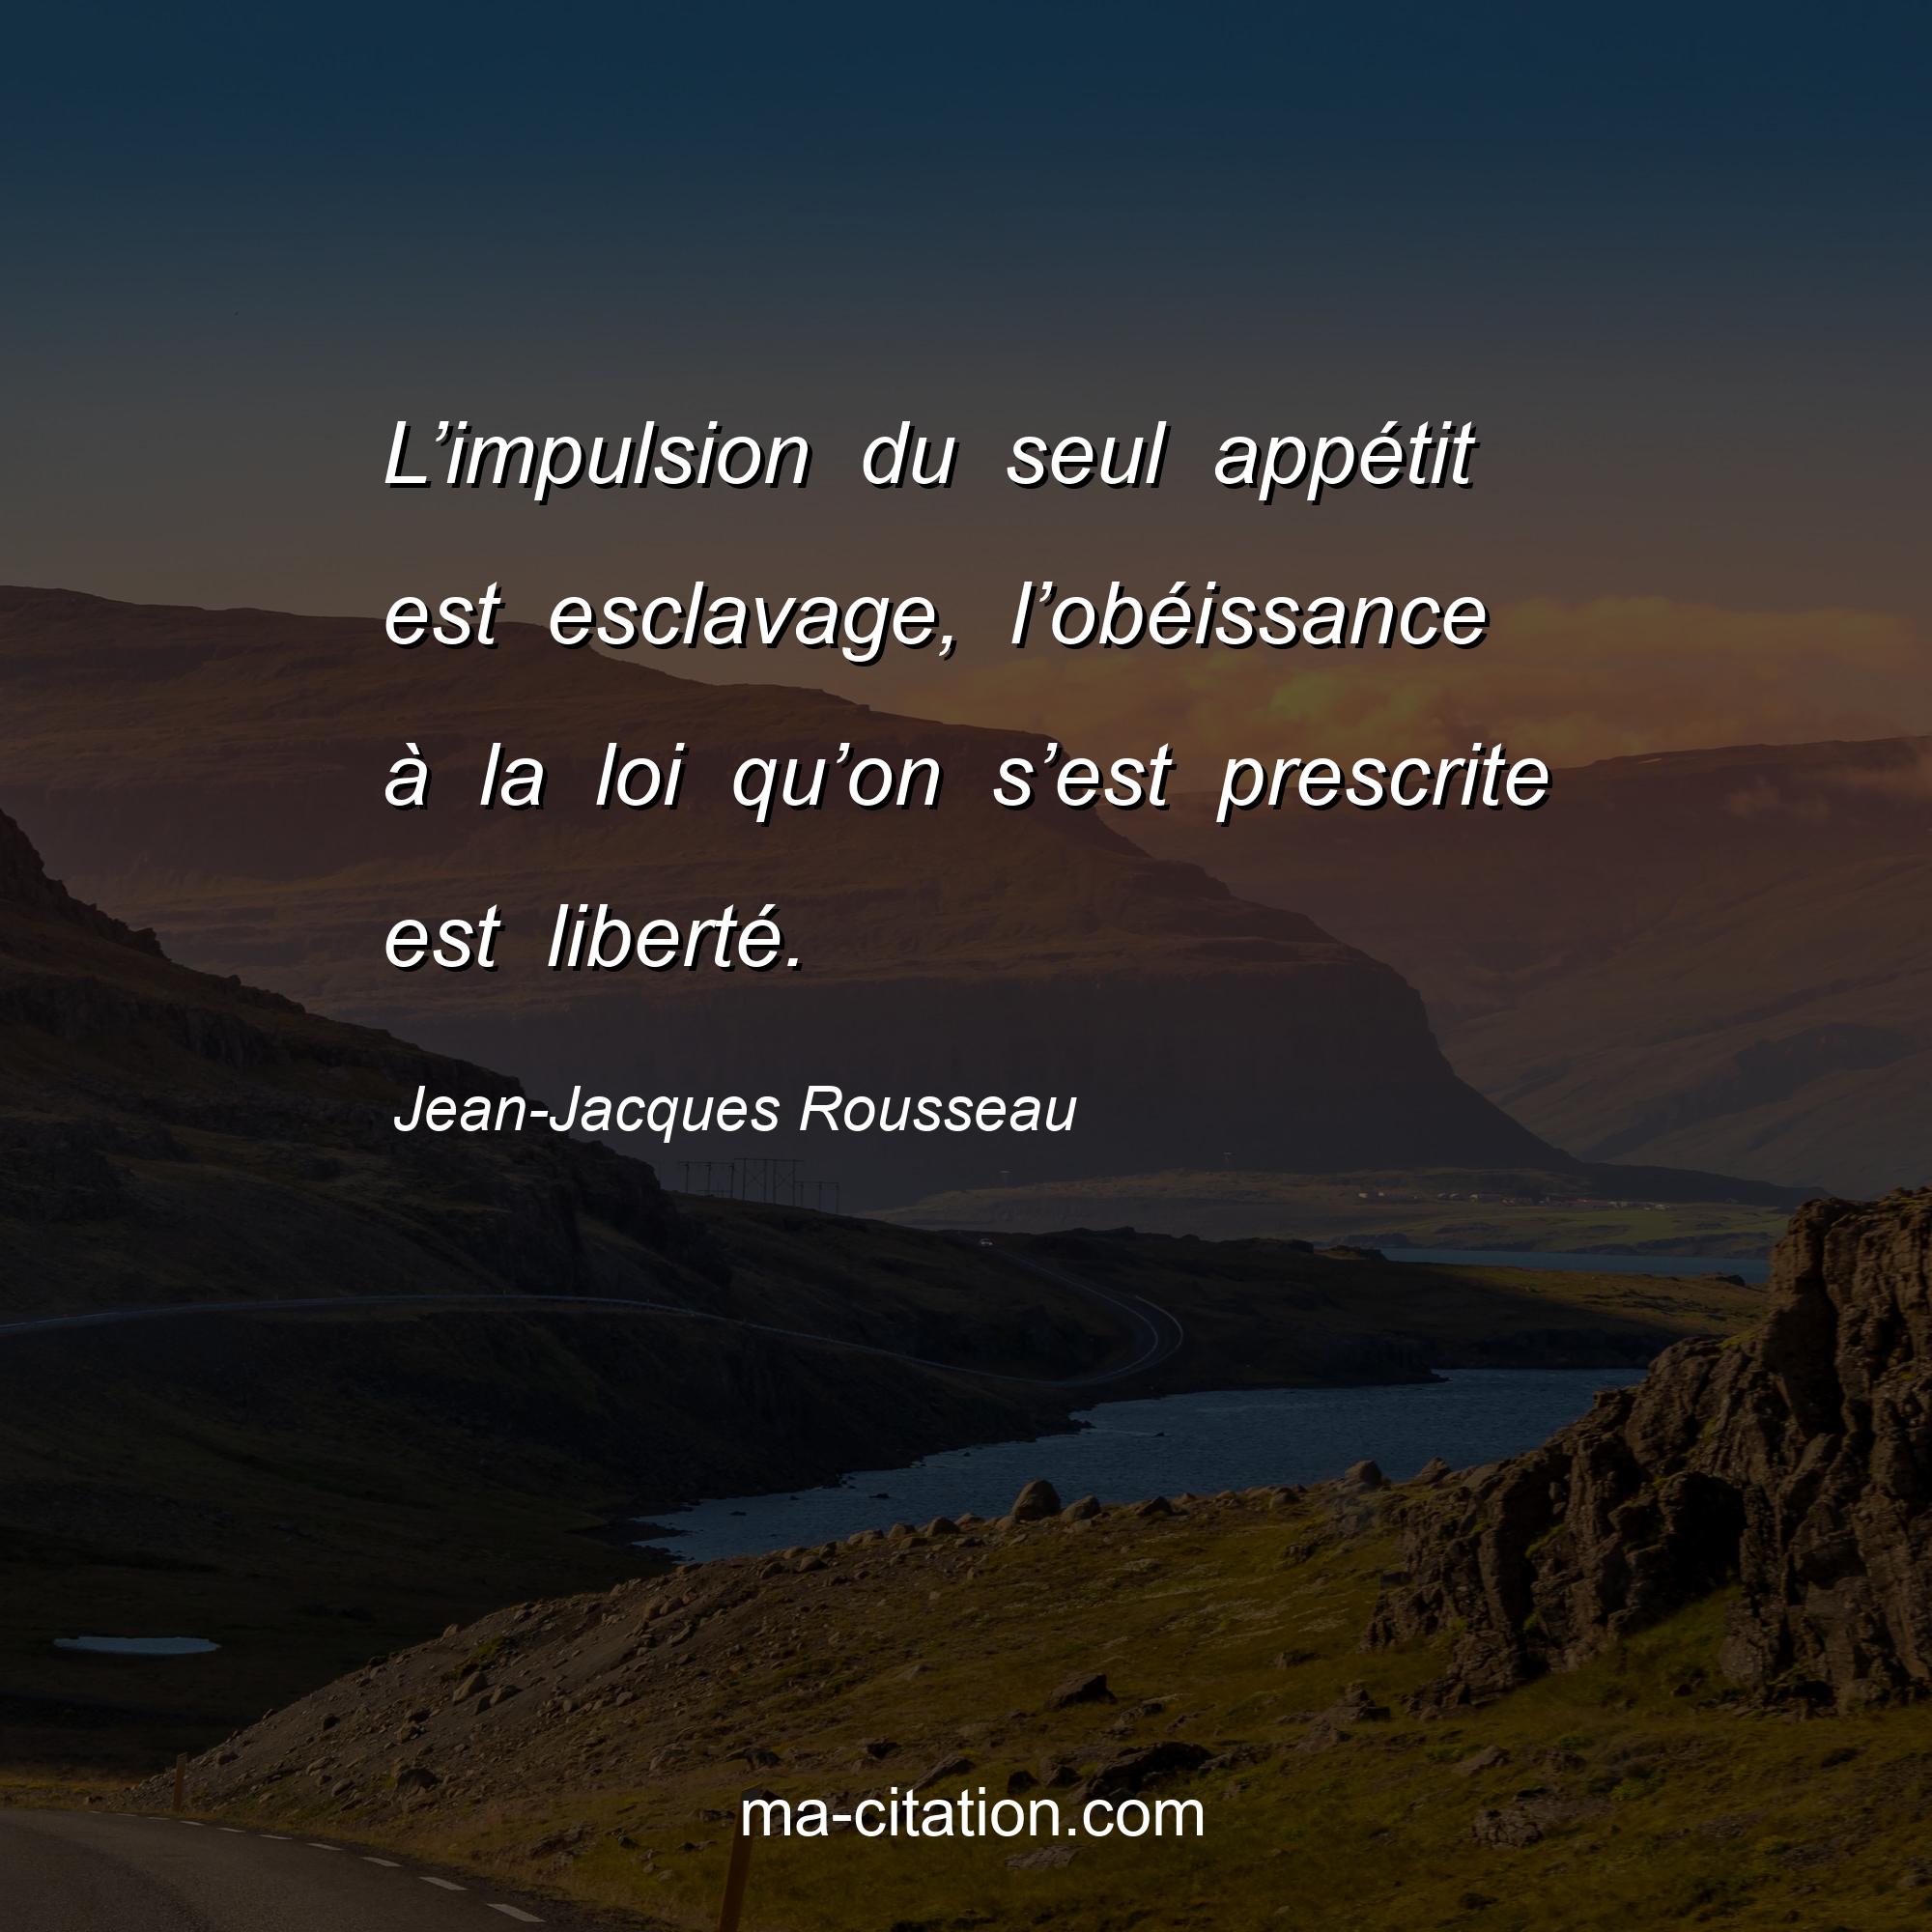 Jean-Jacques Rousseau : L’impulsion du seul appétit est esclavage, l’obéissance à la loi qu’on s’est prescrite est liberté.